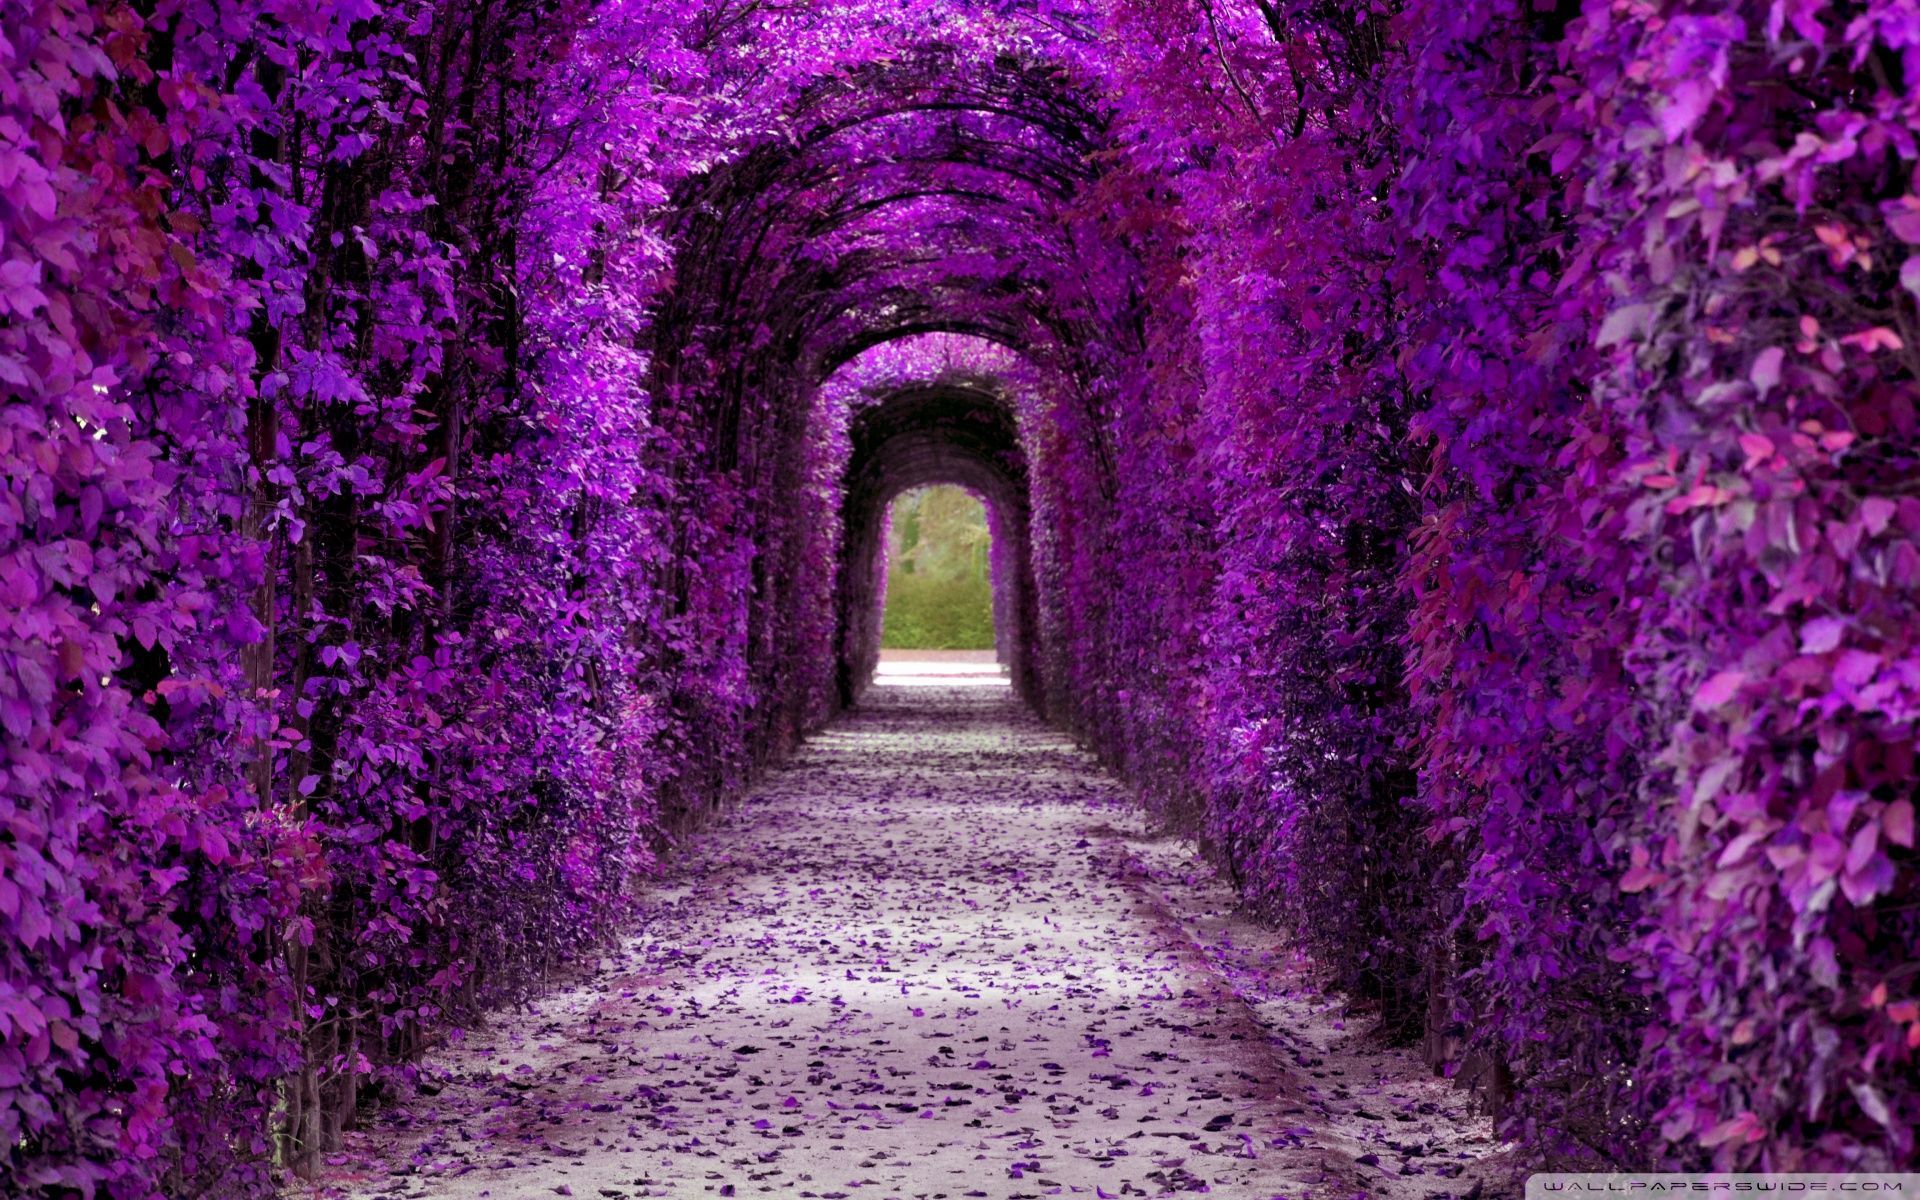 A purple tunnel of flowers. - 1920x1200, purple